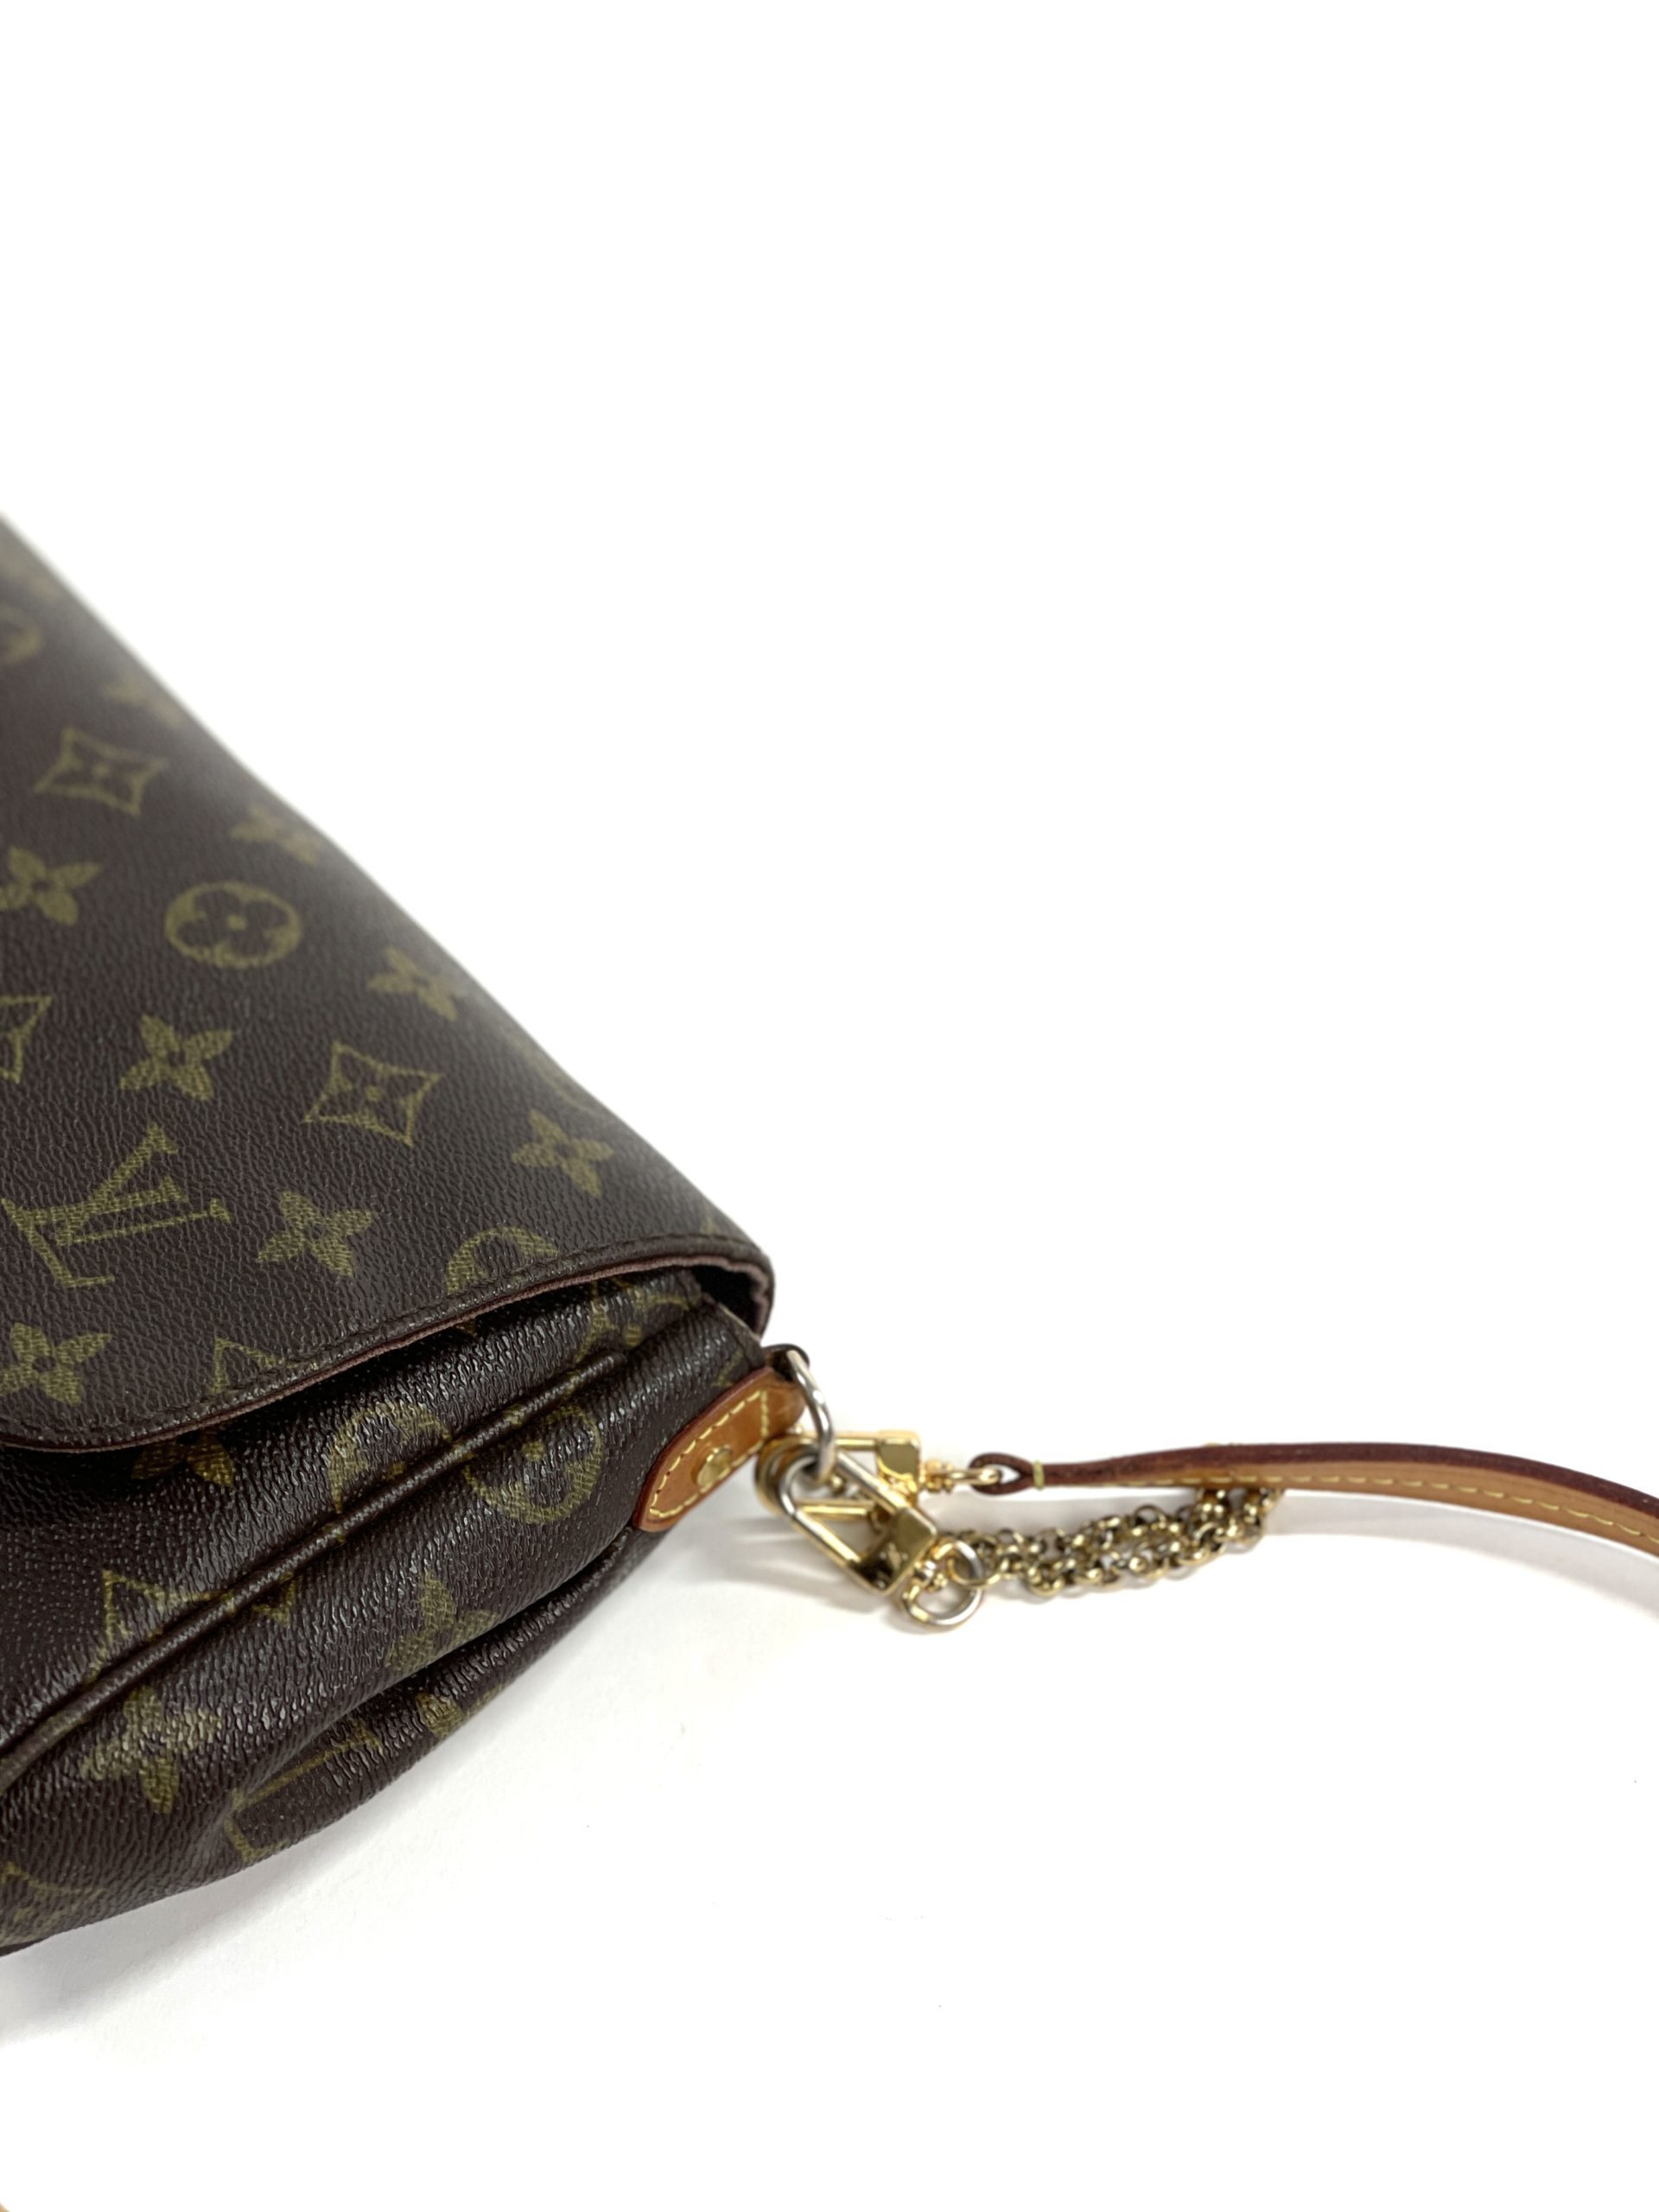 Louis Vuitton clutch chain bag monogram  Vintage louis vuitton handbags, Louis  vuitton handbags prices, Louis vuitton